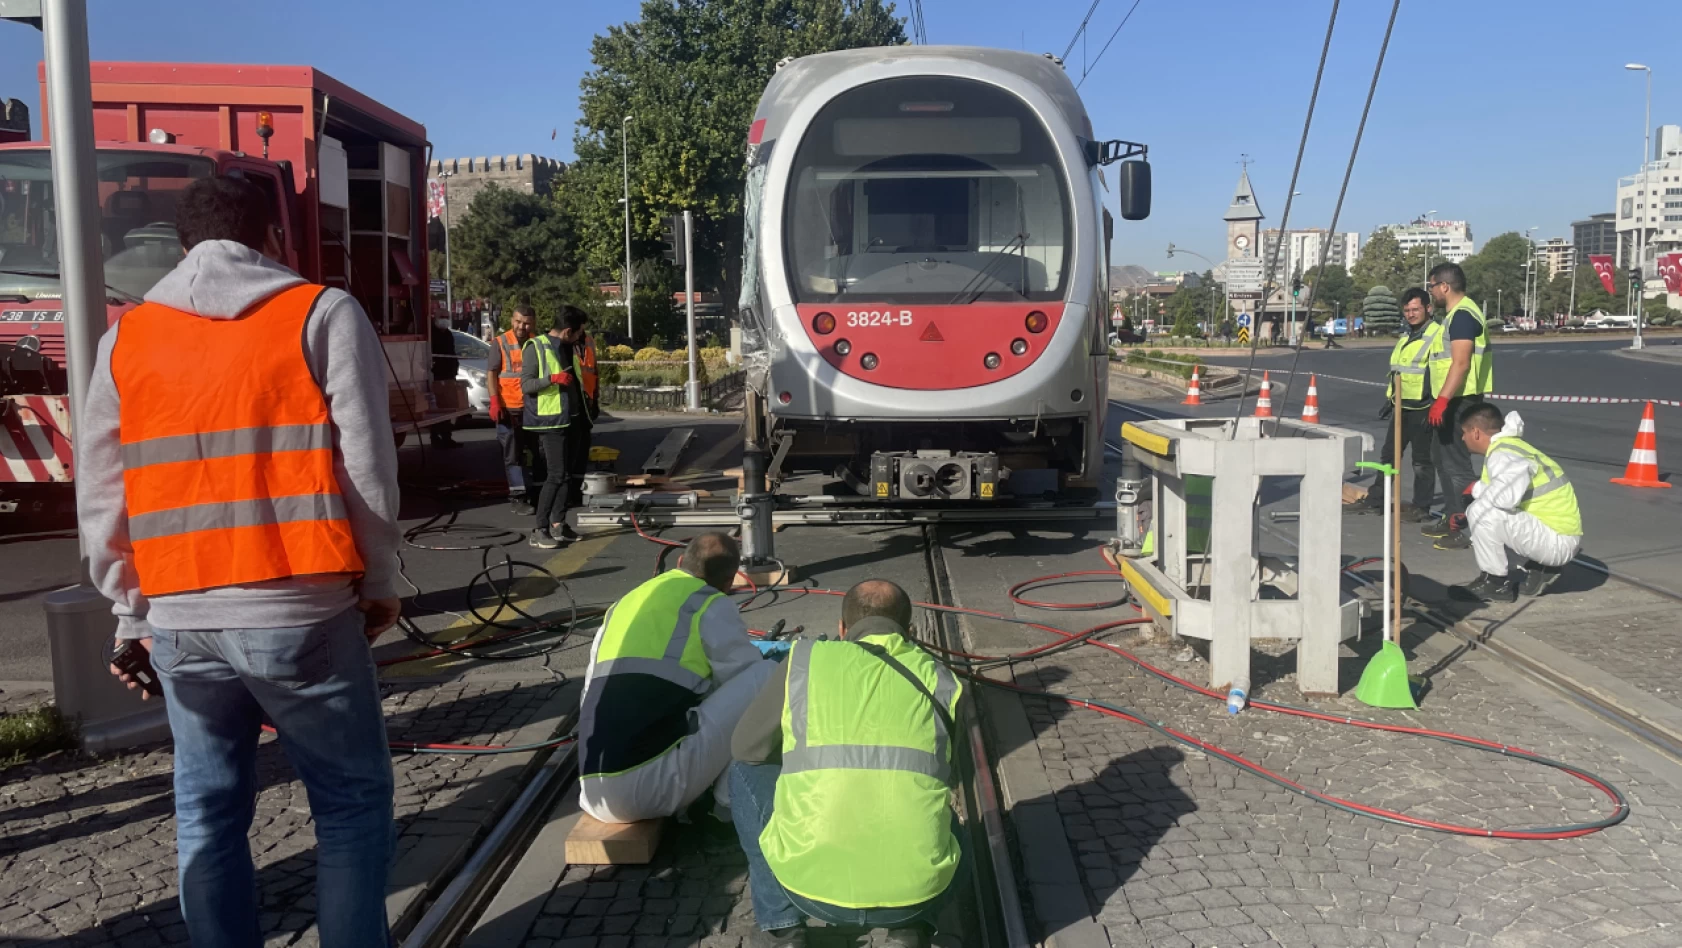 Kayseri’de halk otobüsüyle çarpışan tramvay raydan çıktı